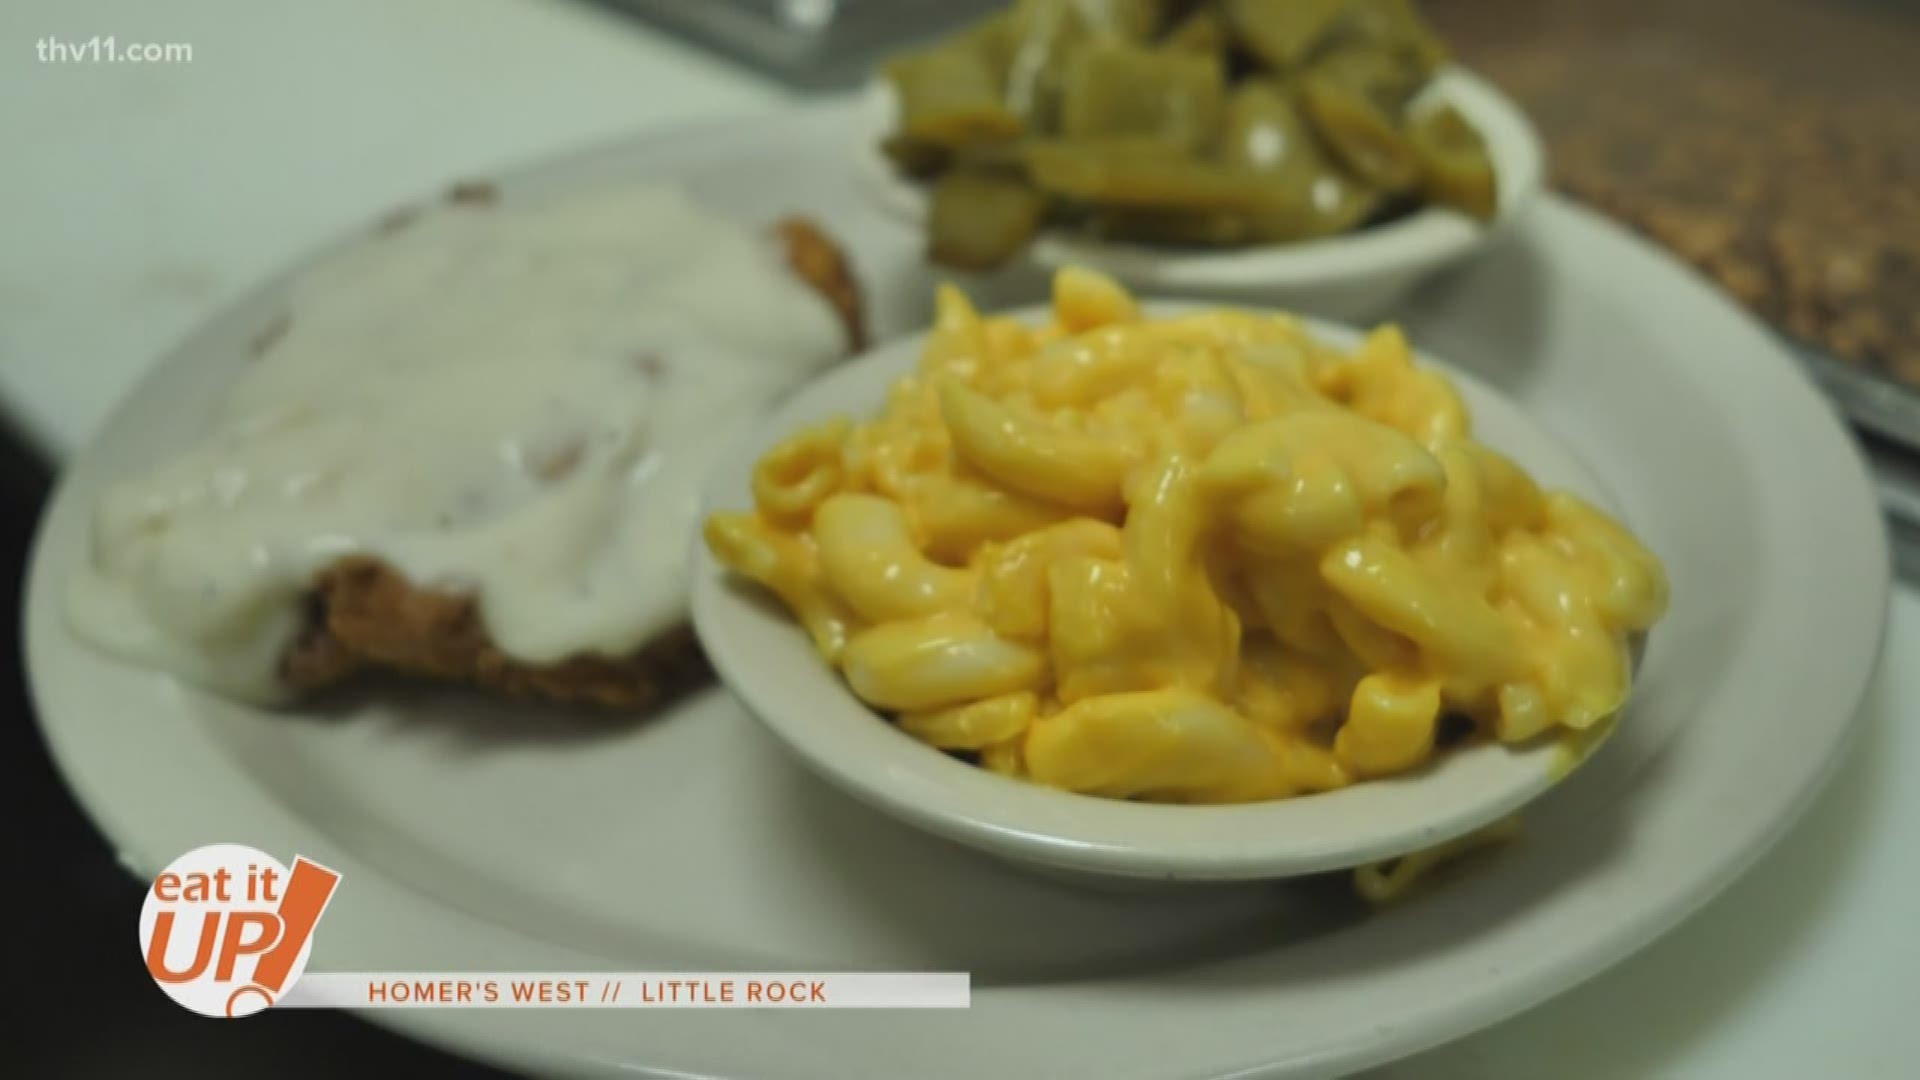 Eat It Up- Homer's West in Little Rock.